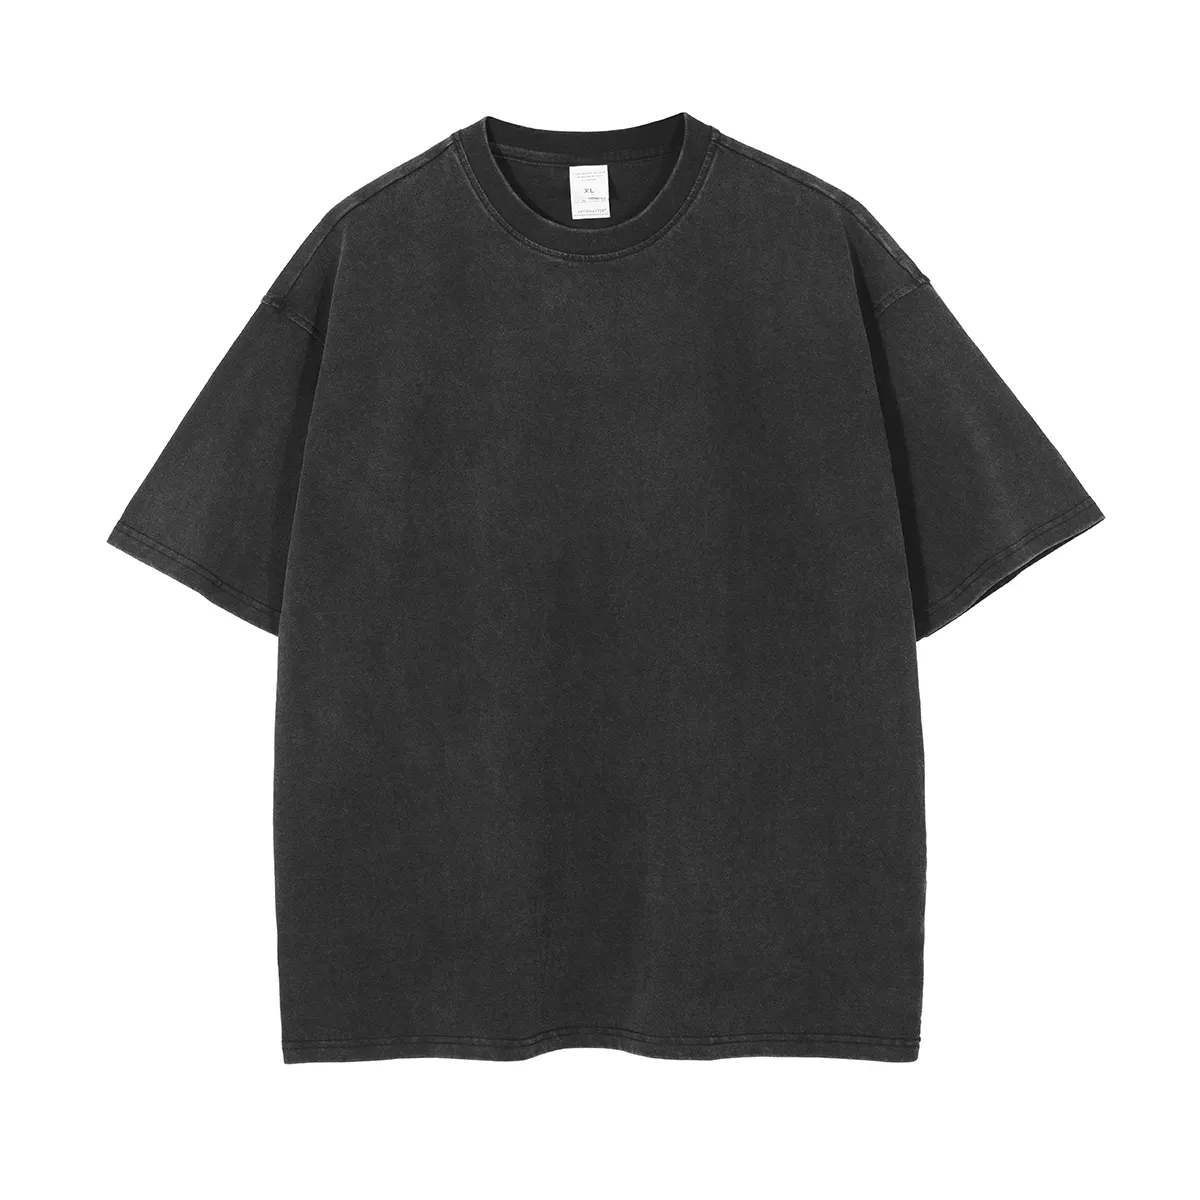 Camiseta masculina vintage lavada de alta qualidade, camiseta grande de algodão liso, personalizada, solta, 100% algodão